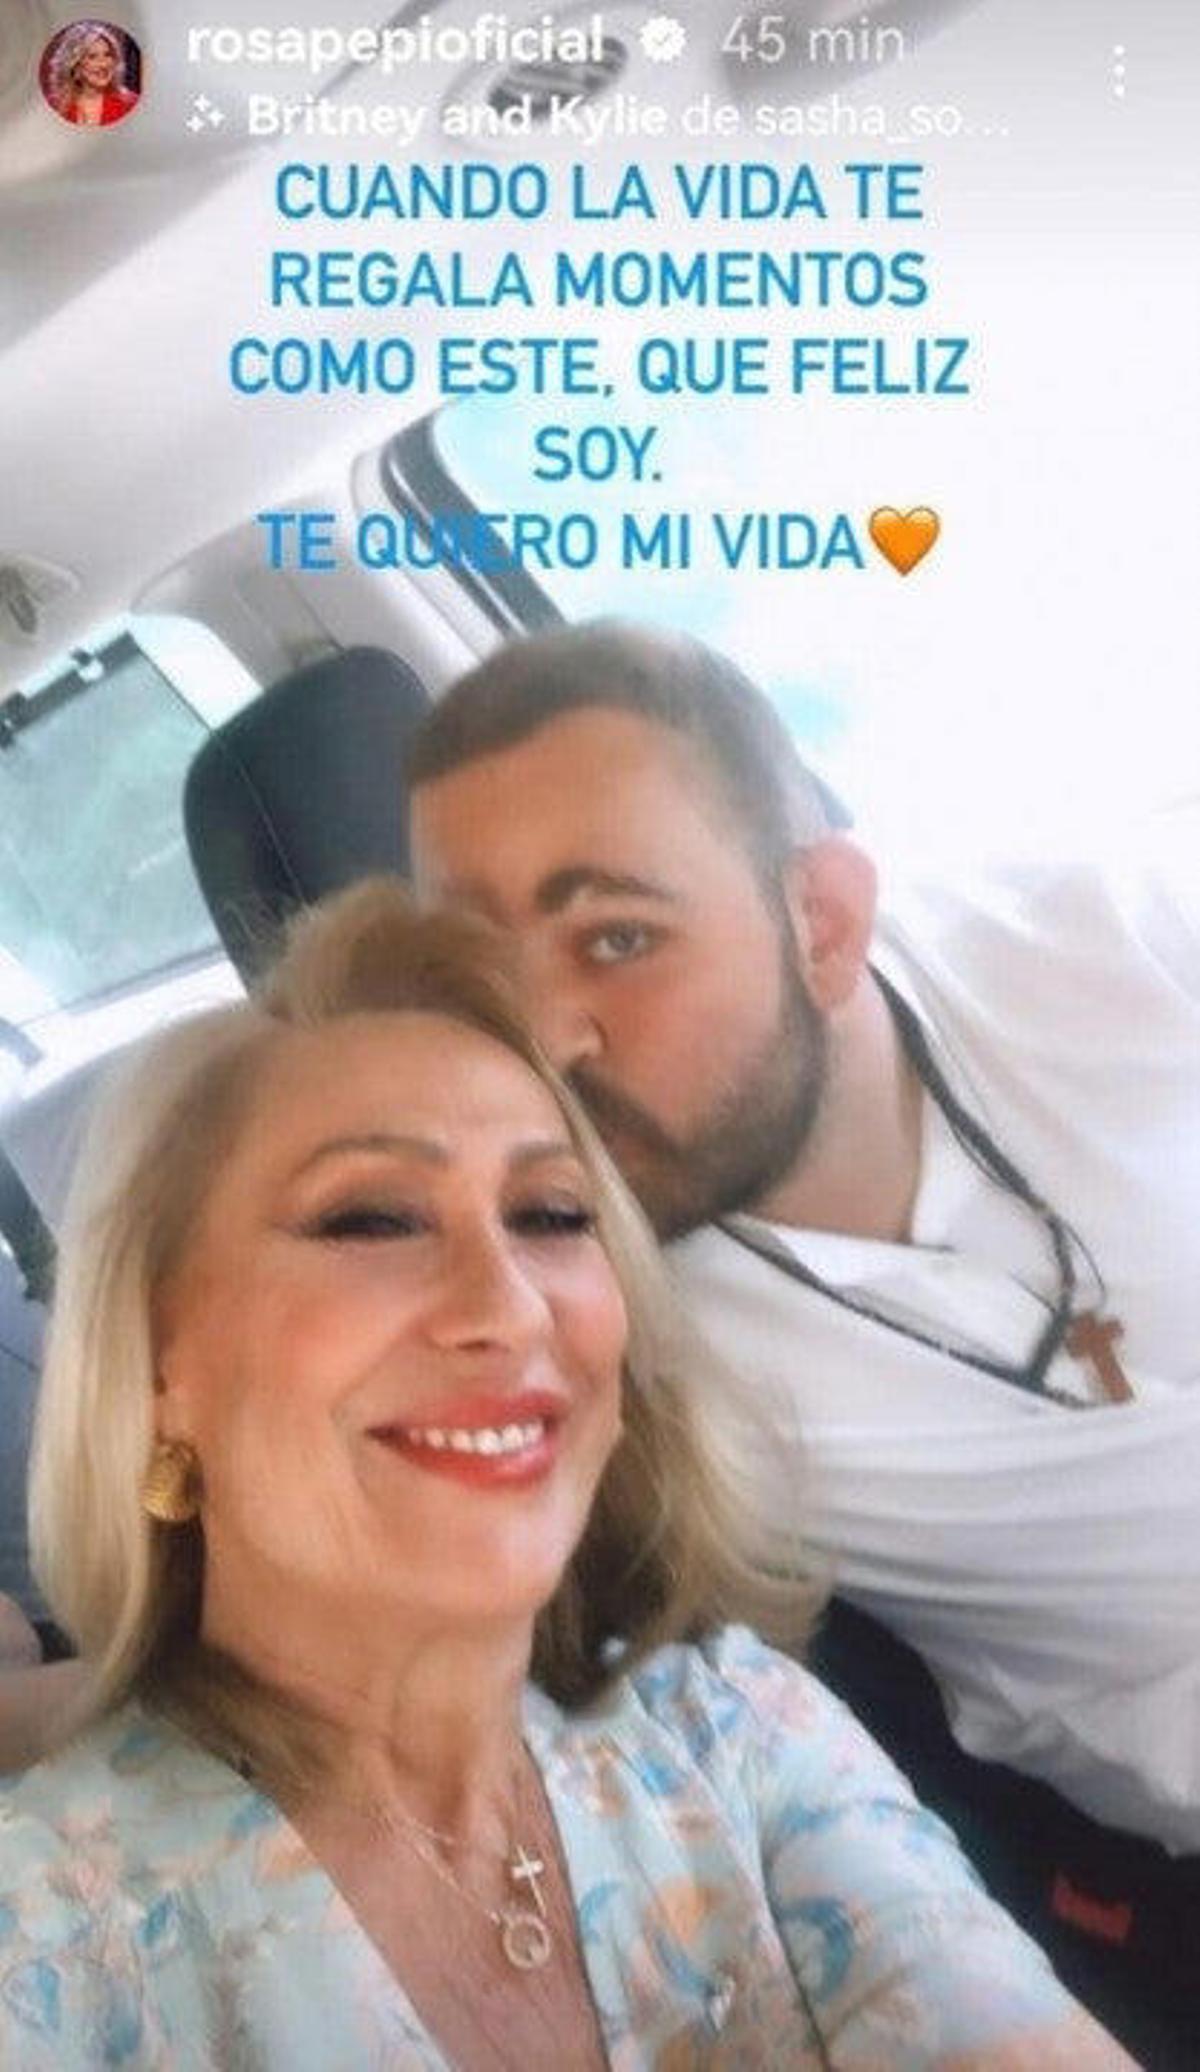 La historia de Instagram de Rosa Benito con David Flores